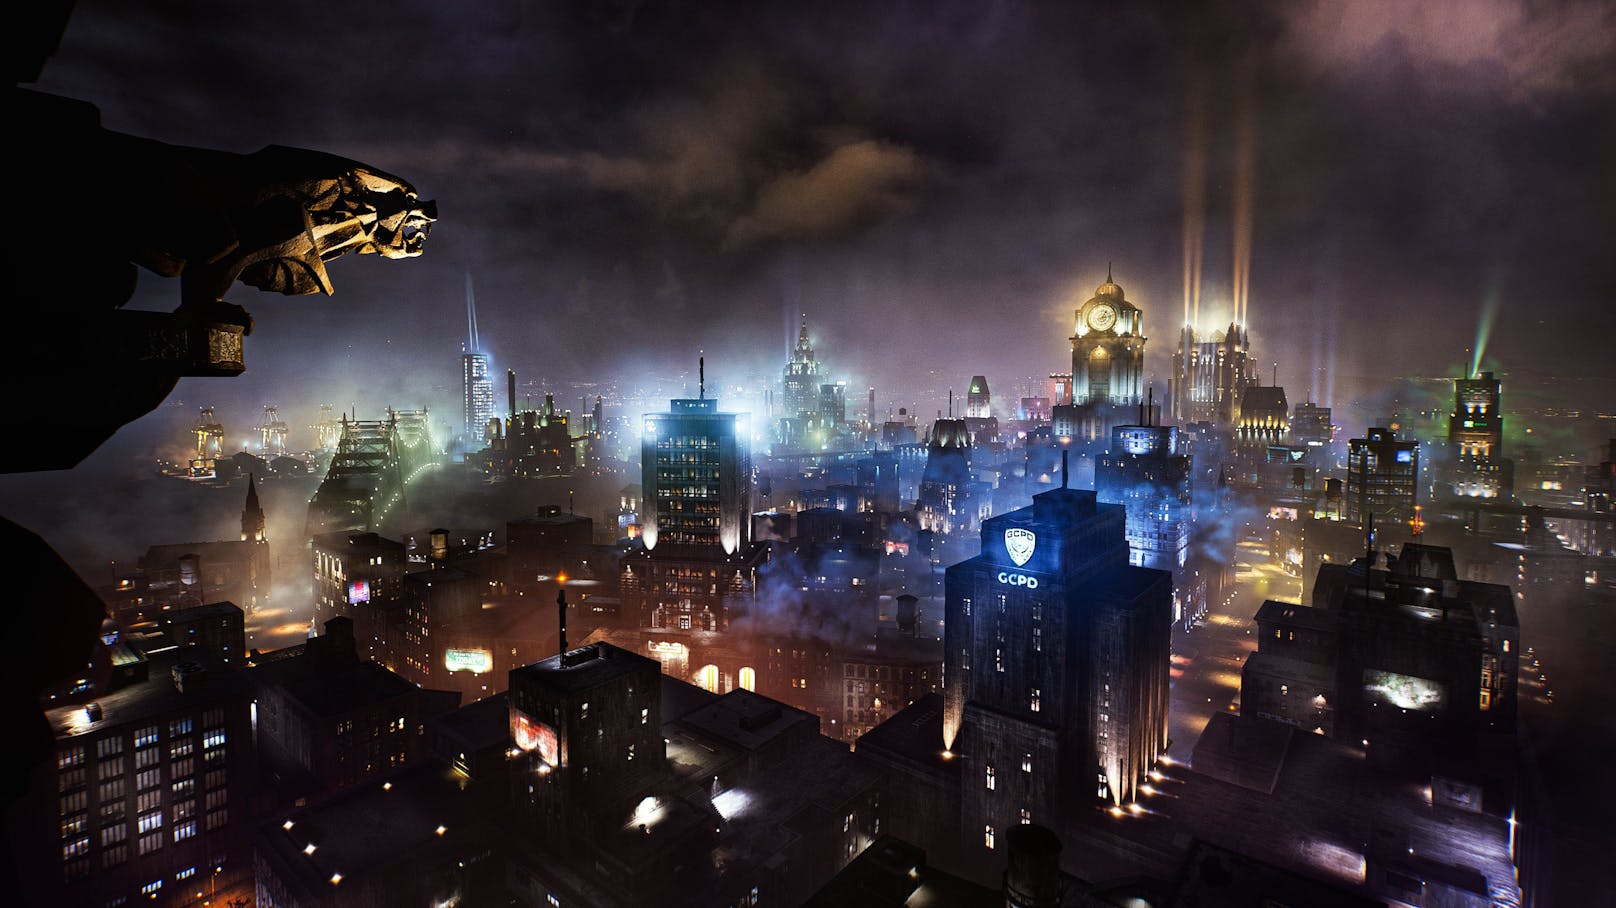 ... war schließlich bei der Qualität der "Arkham"-Games erwartbar. "Gotham Knights" bietet Typisches, das für das neue Game toll aufpoliert wurde.